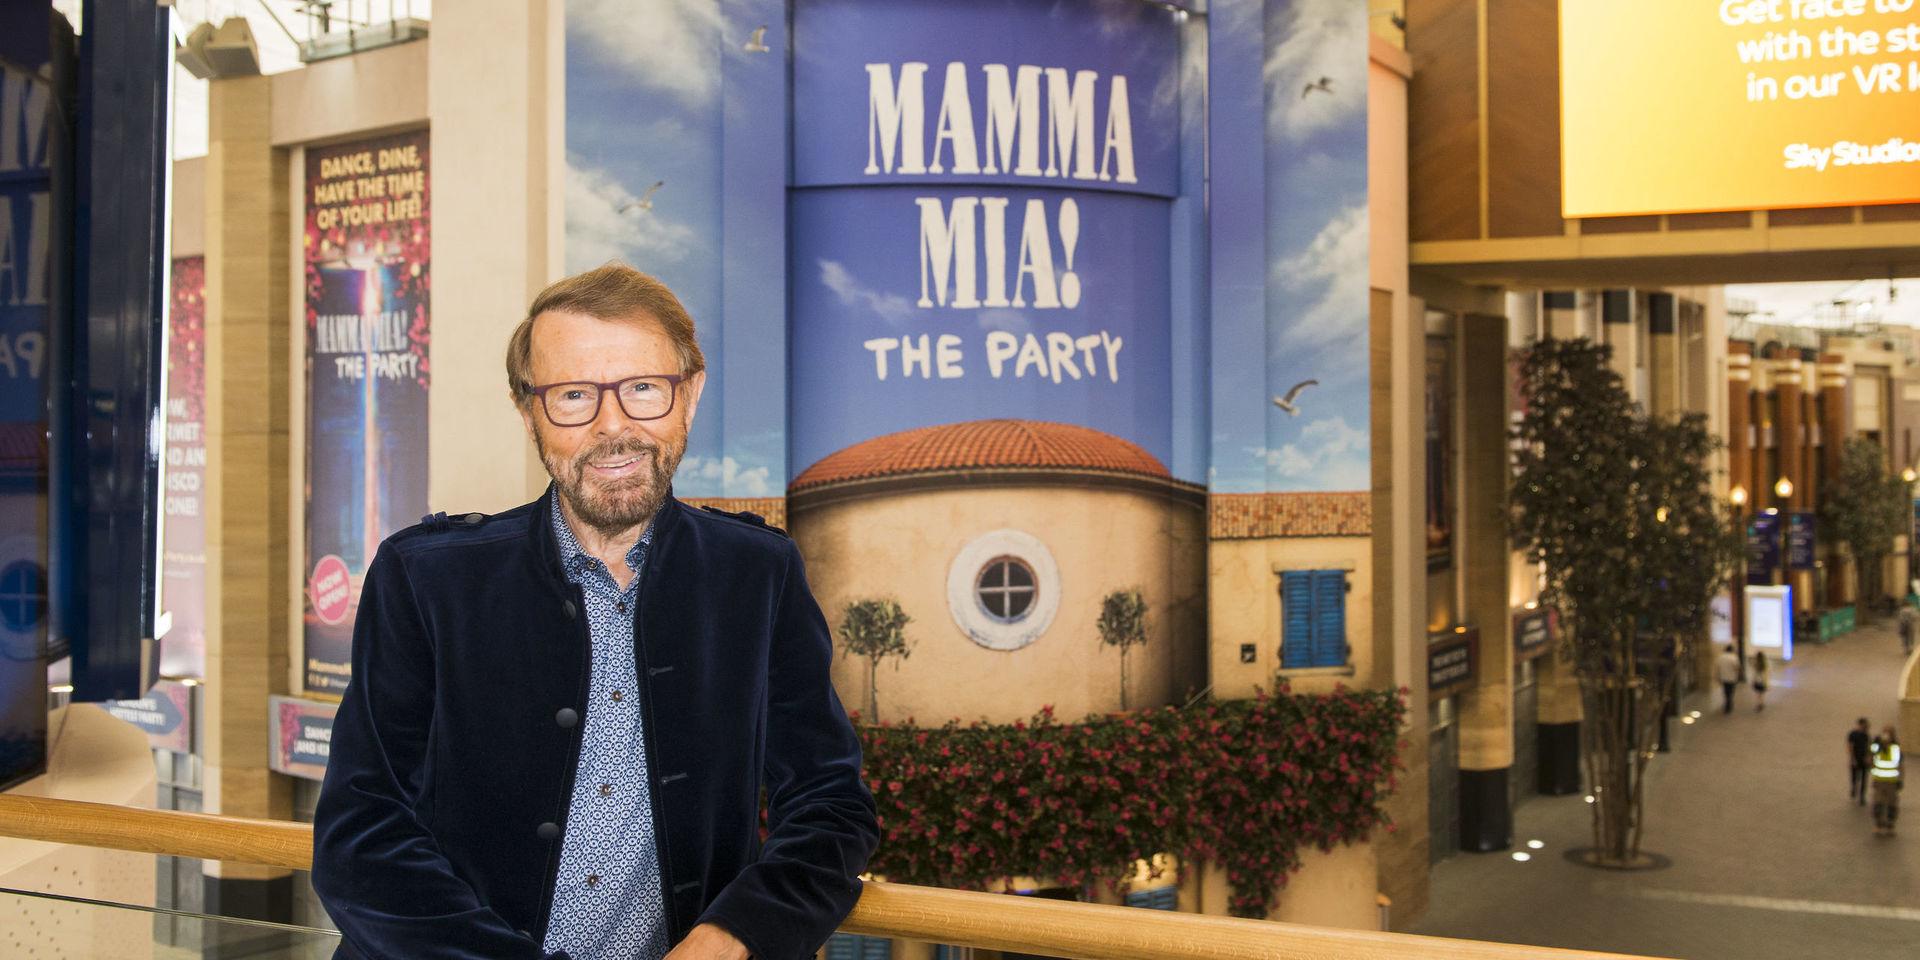 Den som vill gå på 'Mamma mia! The party' i London får ta sig till O2-arenan, tidigare känd som Millenniedomen. Den ligger lite för sig själv i Greenwich. 'Här kan gästerna hålla på till långt inpå natten utan att störa någon', säger Björn Ulvaeus.